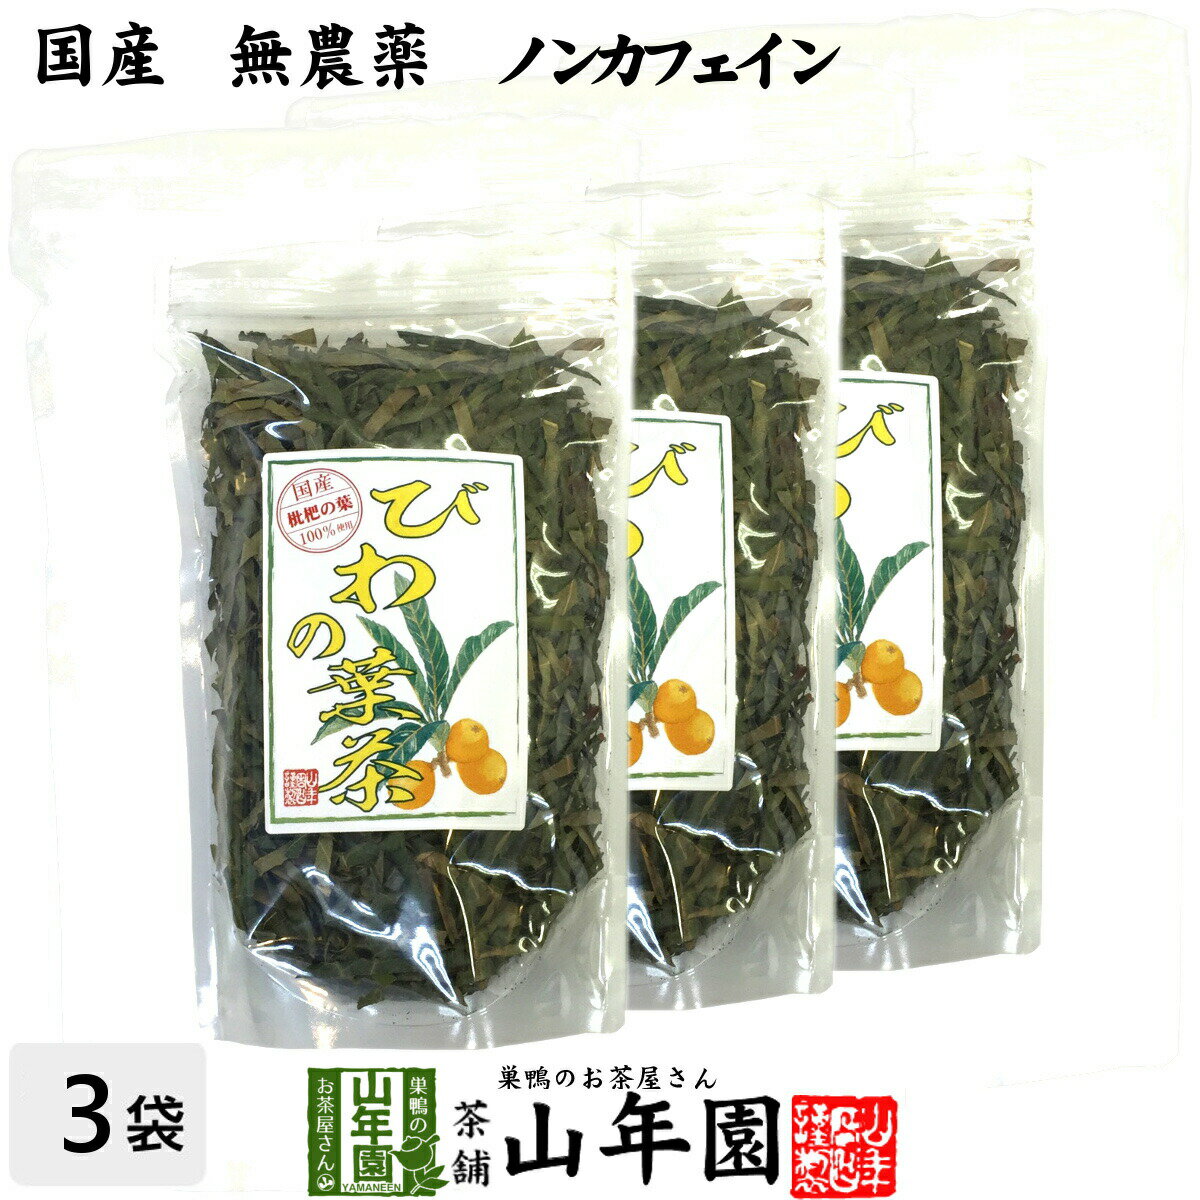 【国産 100%】びわ茶 びわの葉茶 100g×3袋セット 